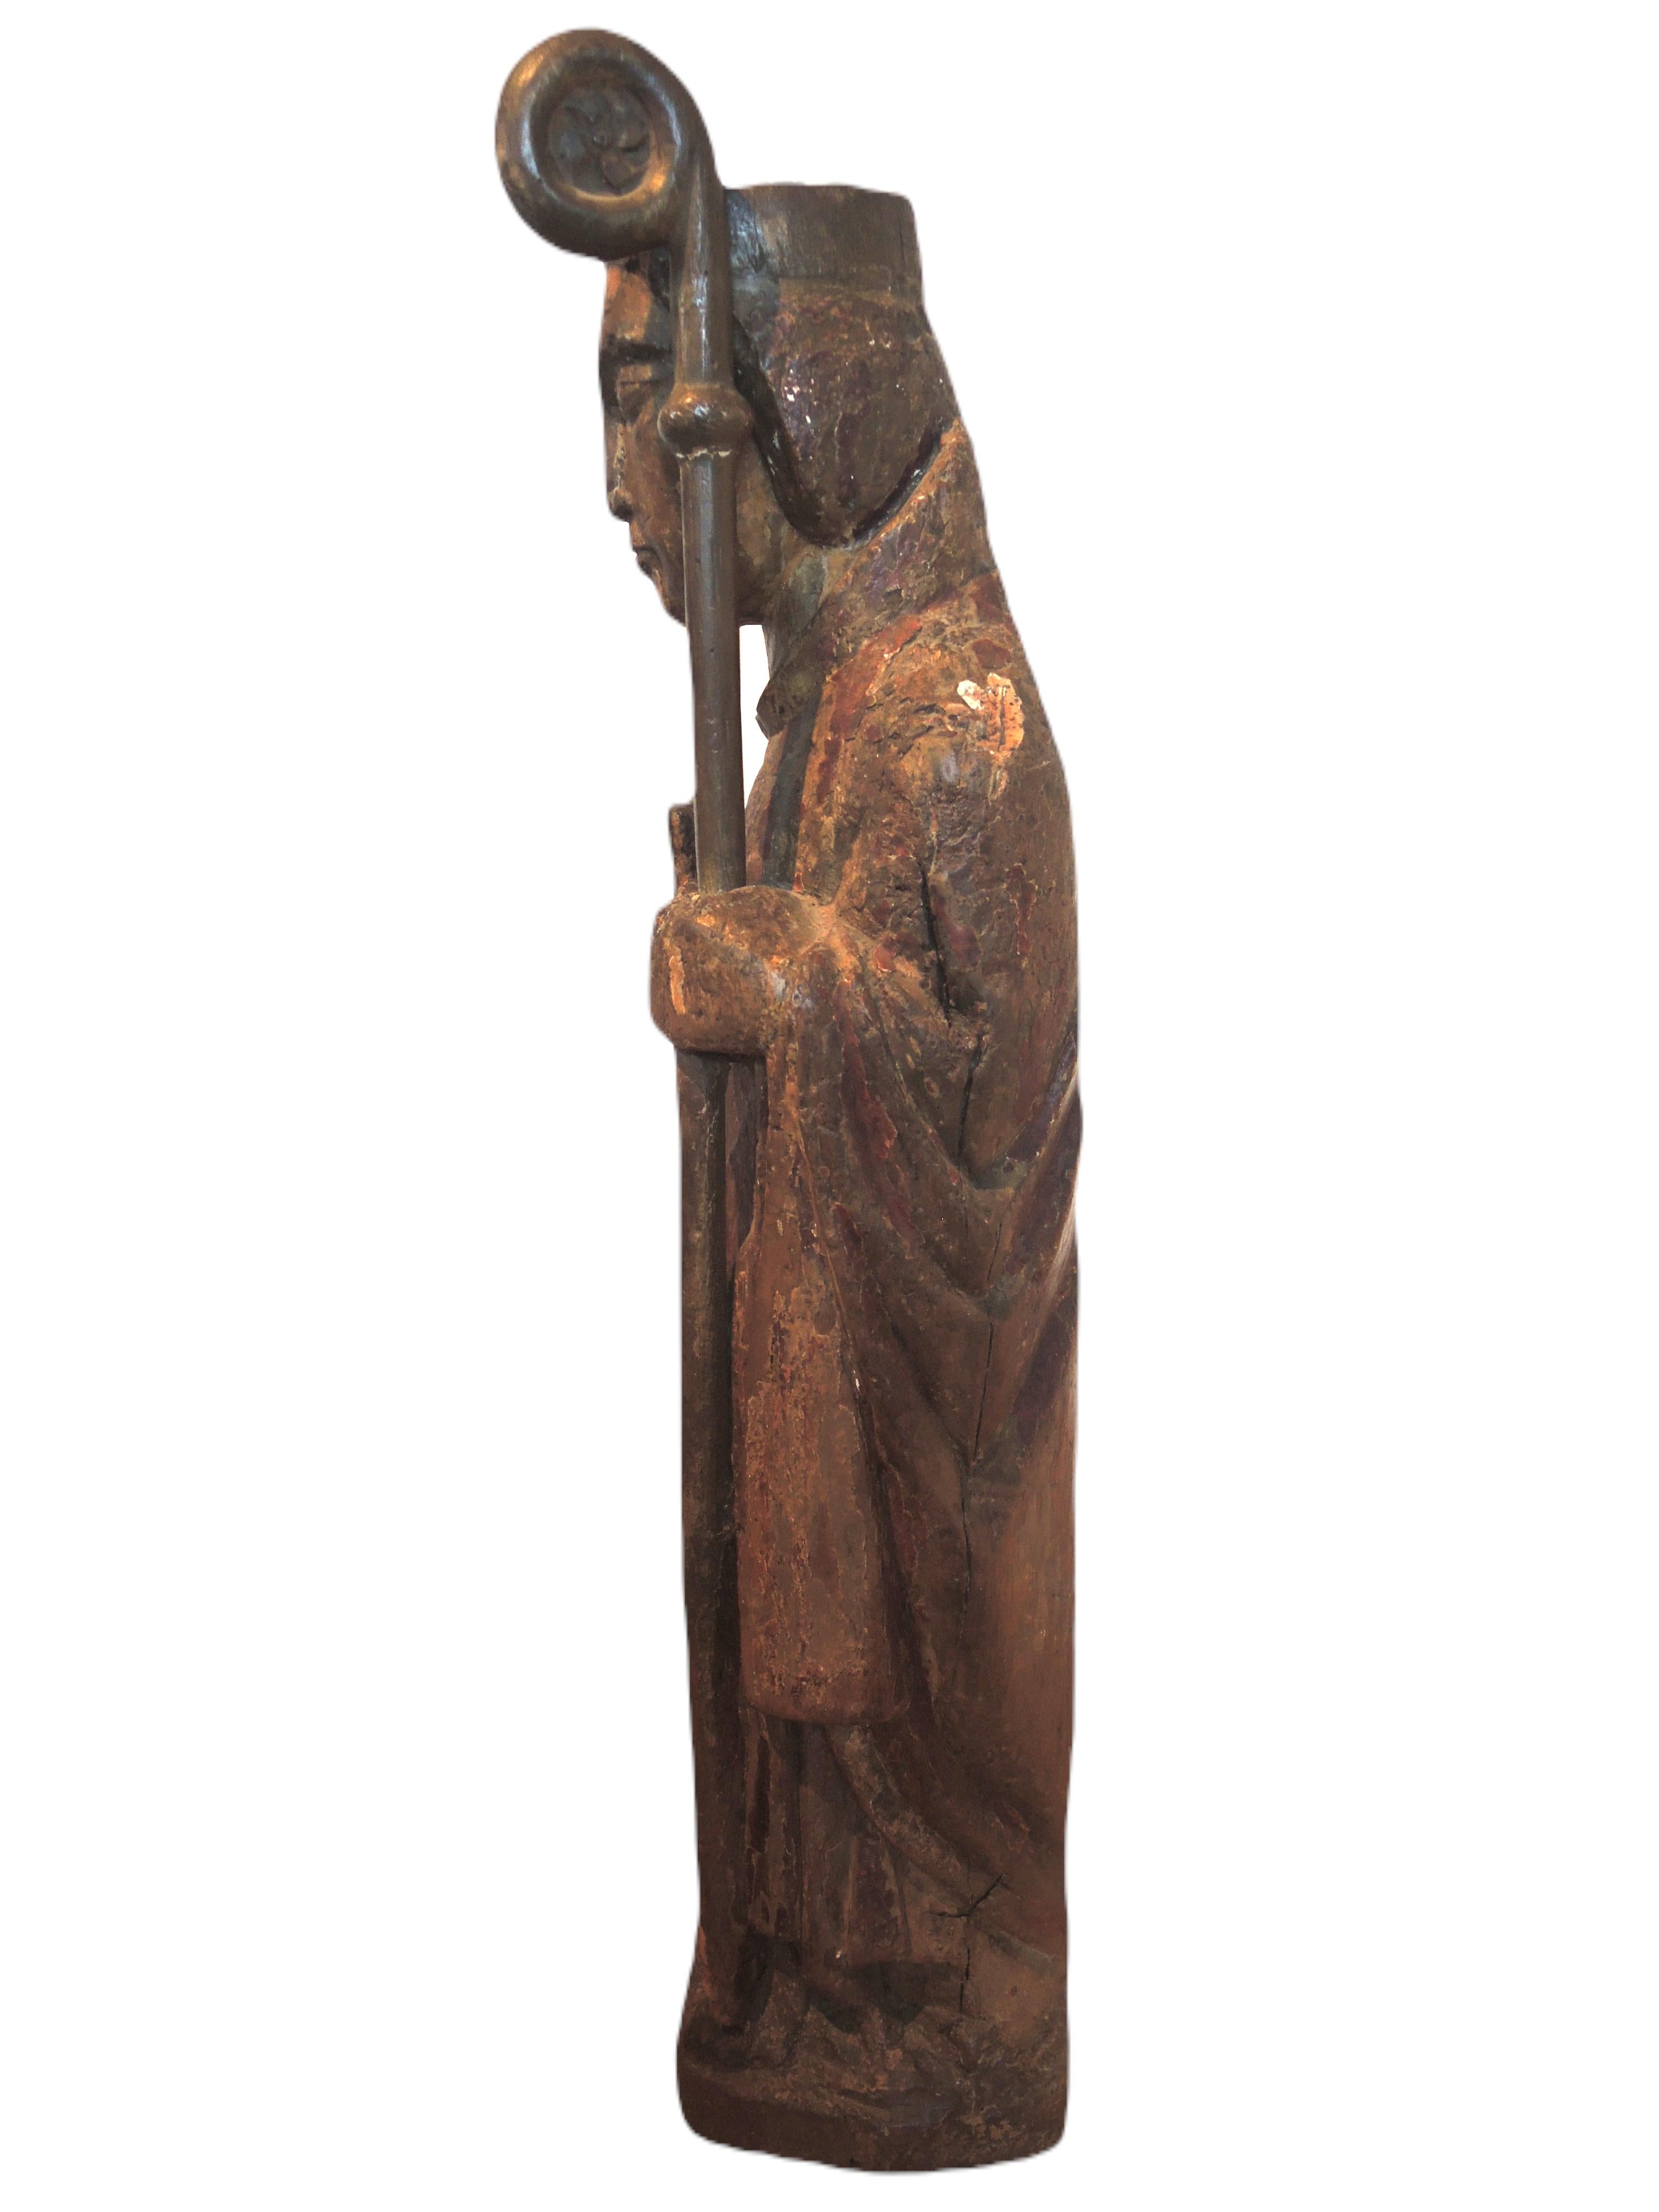 Catalane Schule des 13. Jahrhunderts. Hölzerner Bischof (Braun), Figurative Sculpture, von Unknown